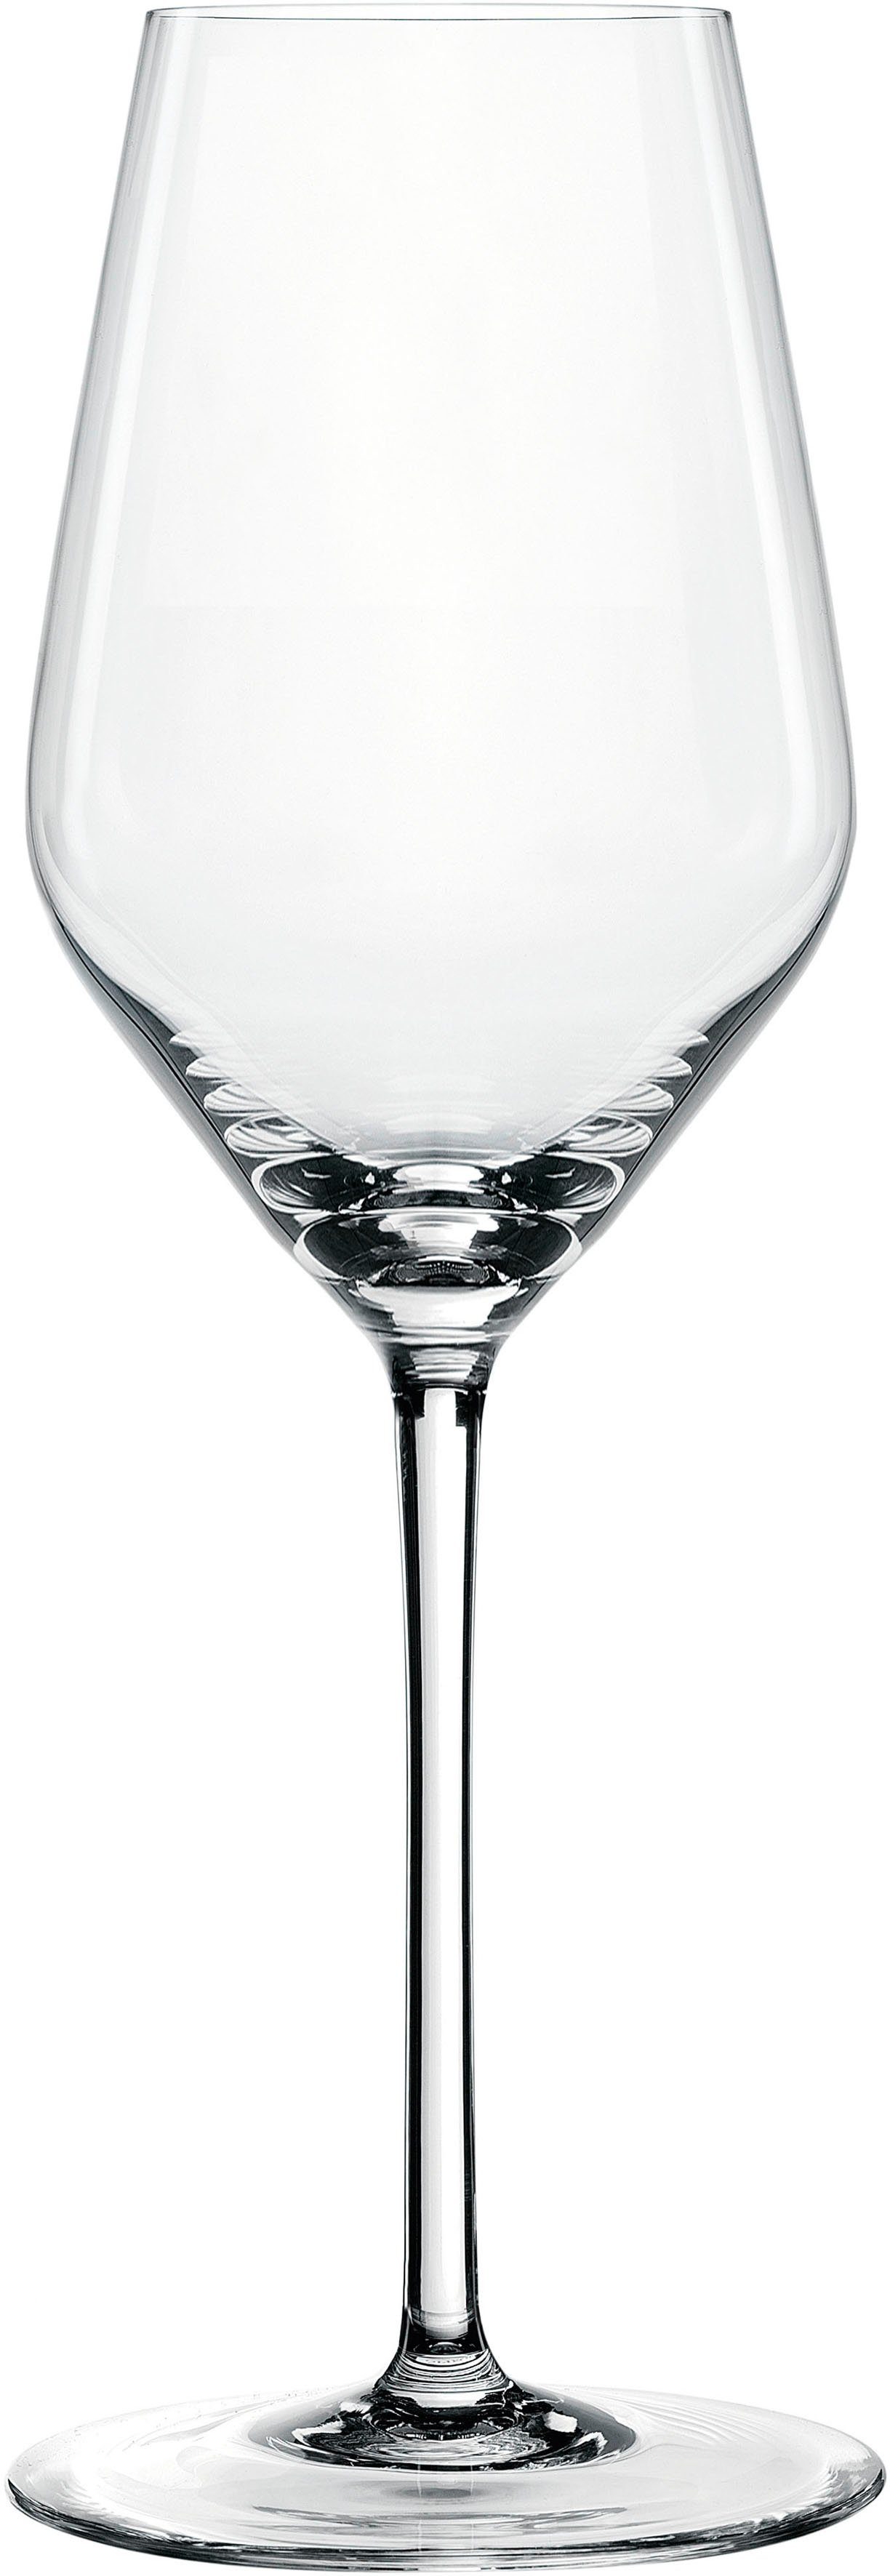 Nachtmann SPIEGELAU Champagnerglas Style, Kristallglas, 310 ml, 4-teilig